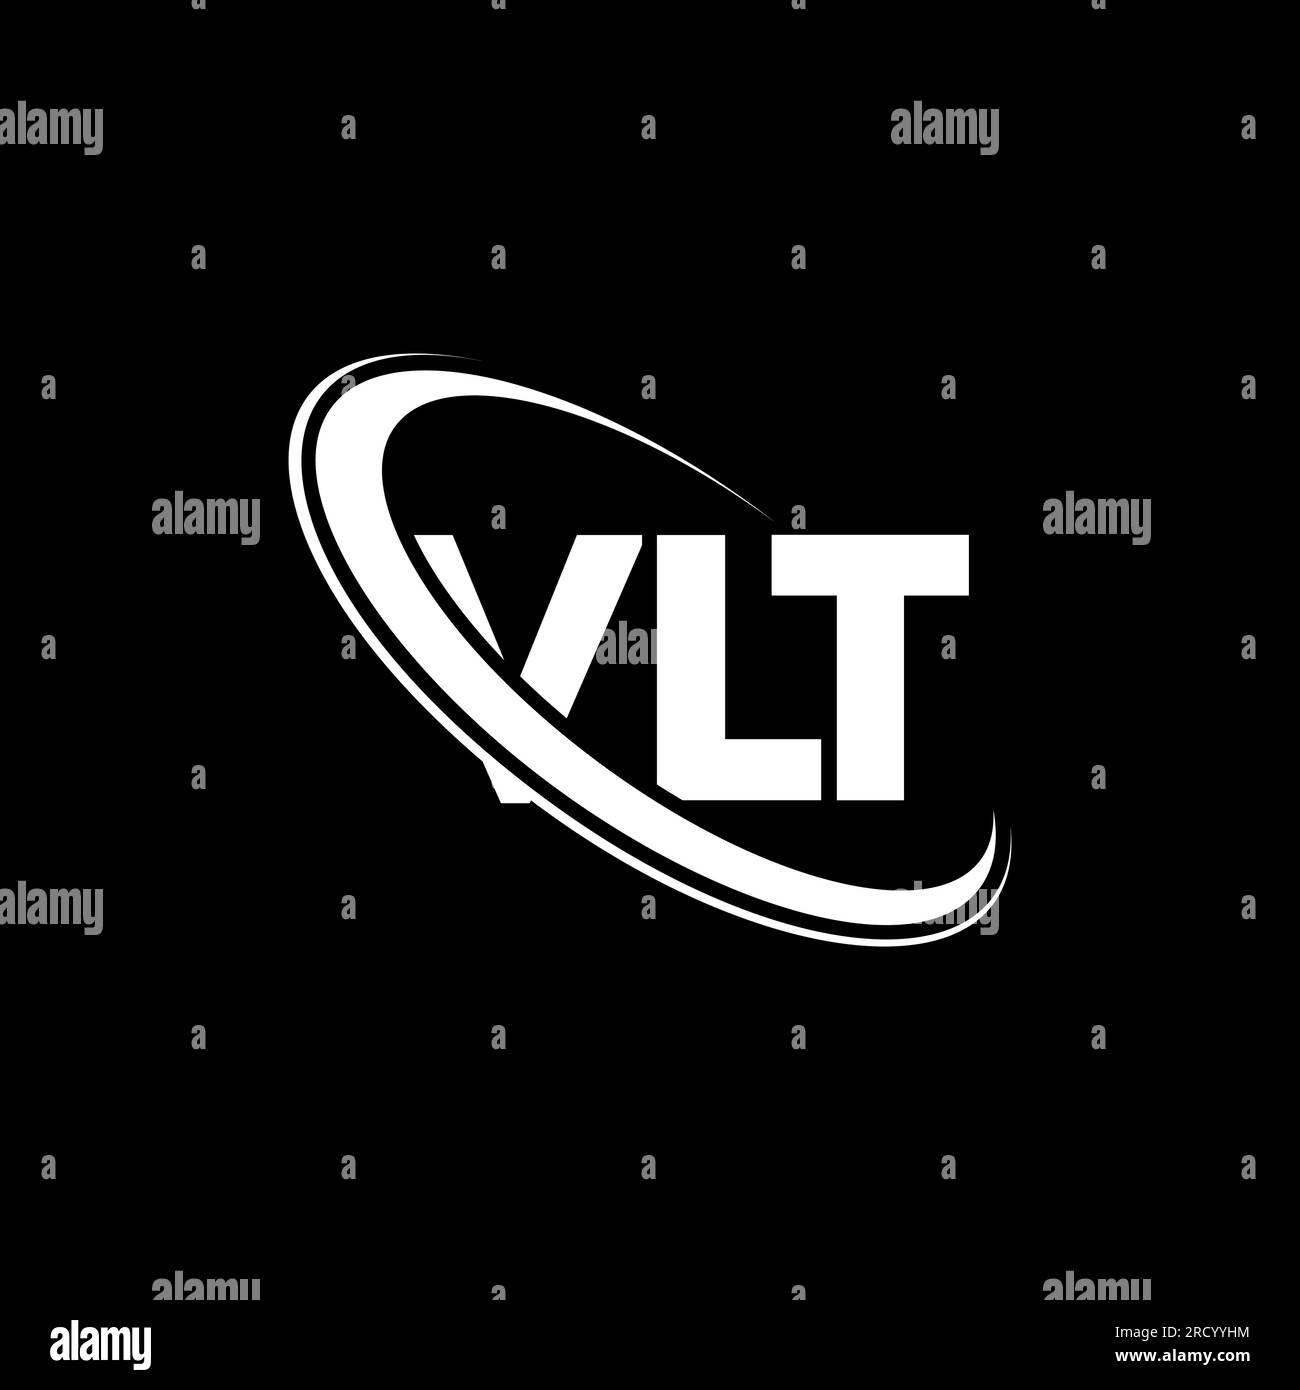 Vlt logo Stock Vector Images - Alamy